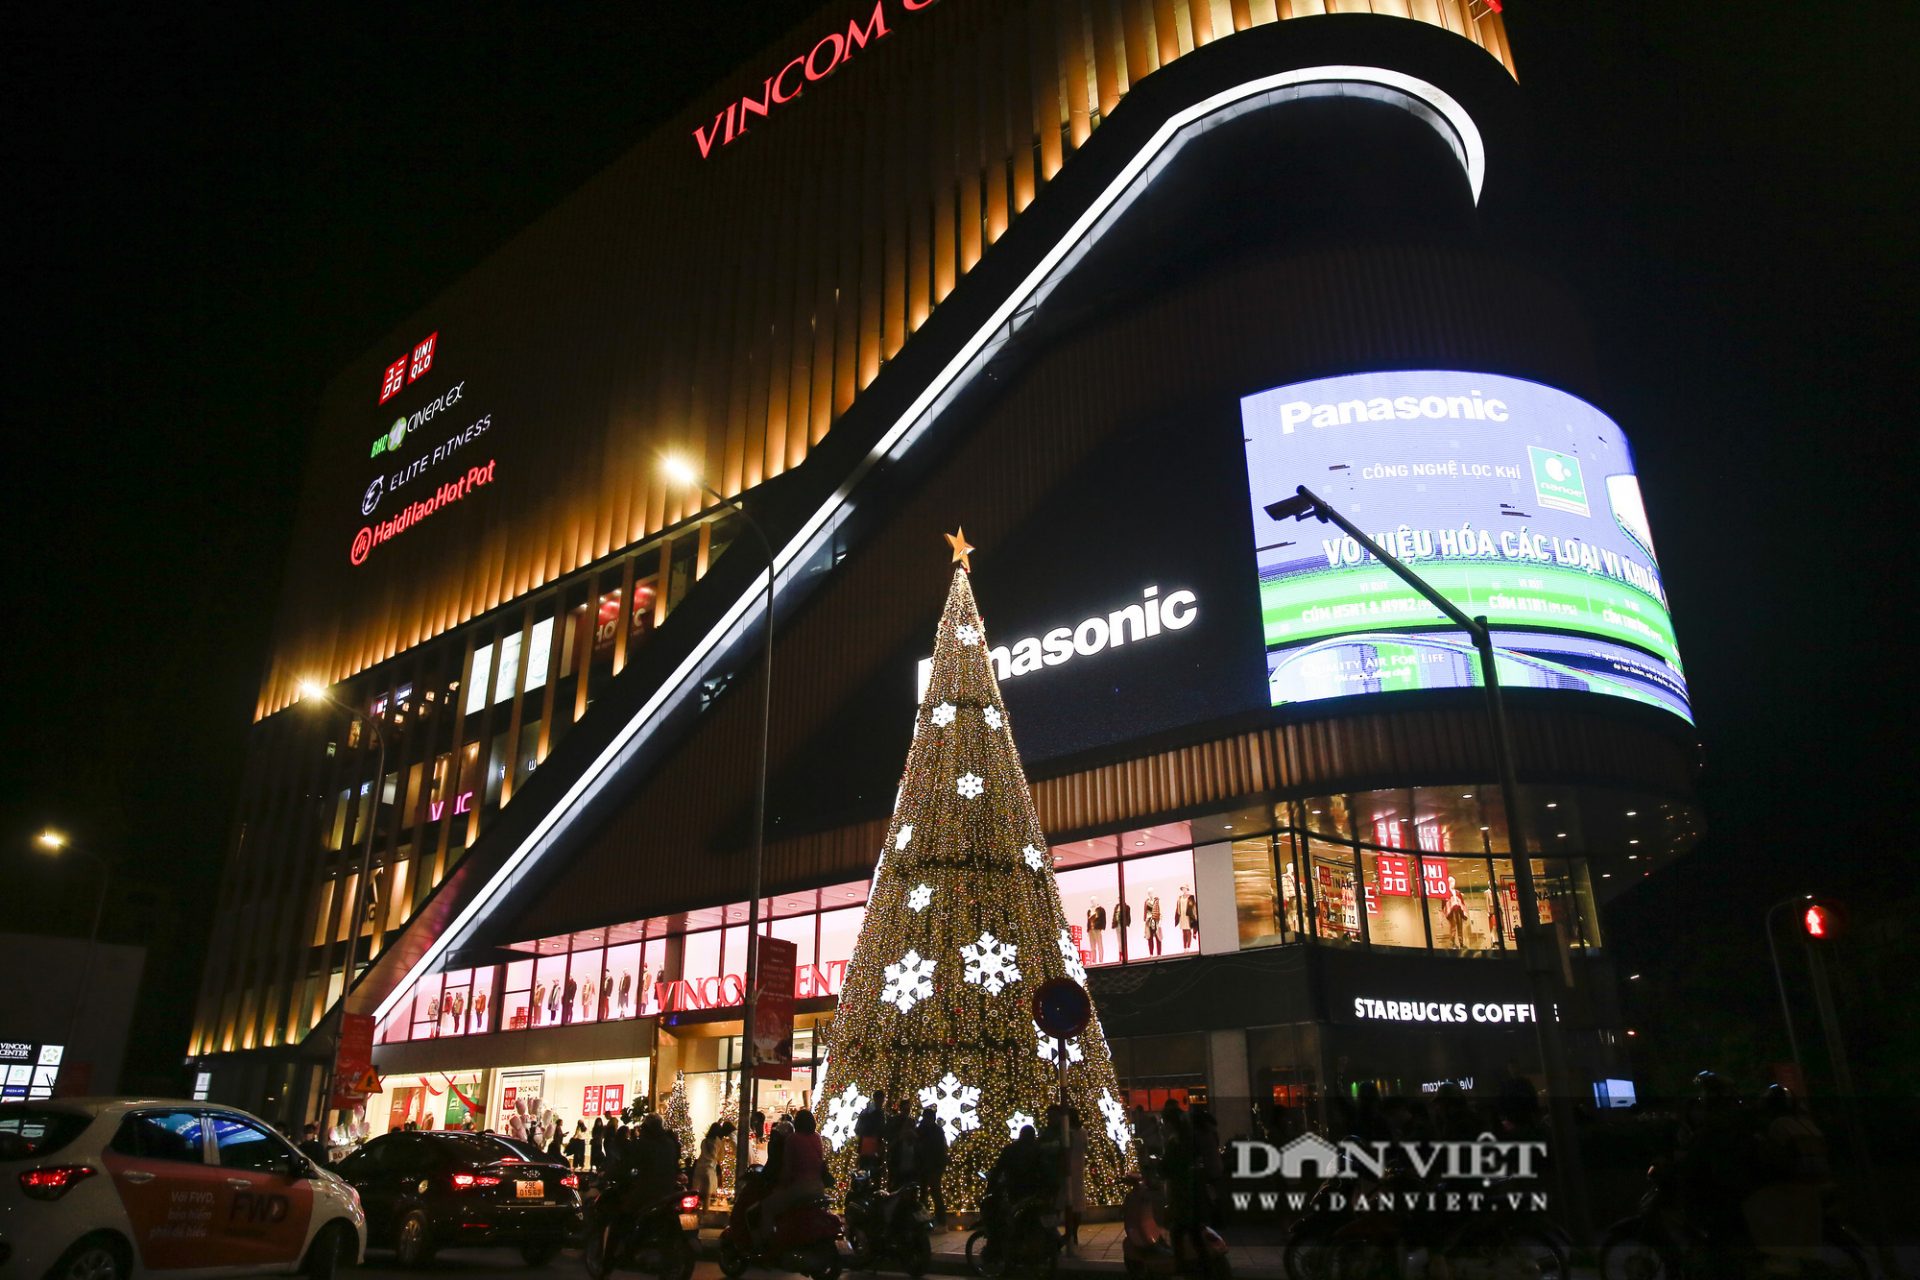 Cây thông khổng lồ thắp sáng rực rỡ khắp các trung tâm thương mại Hà Nội - Ảnh 5.